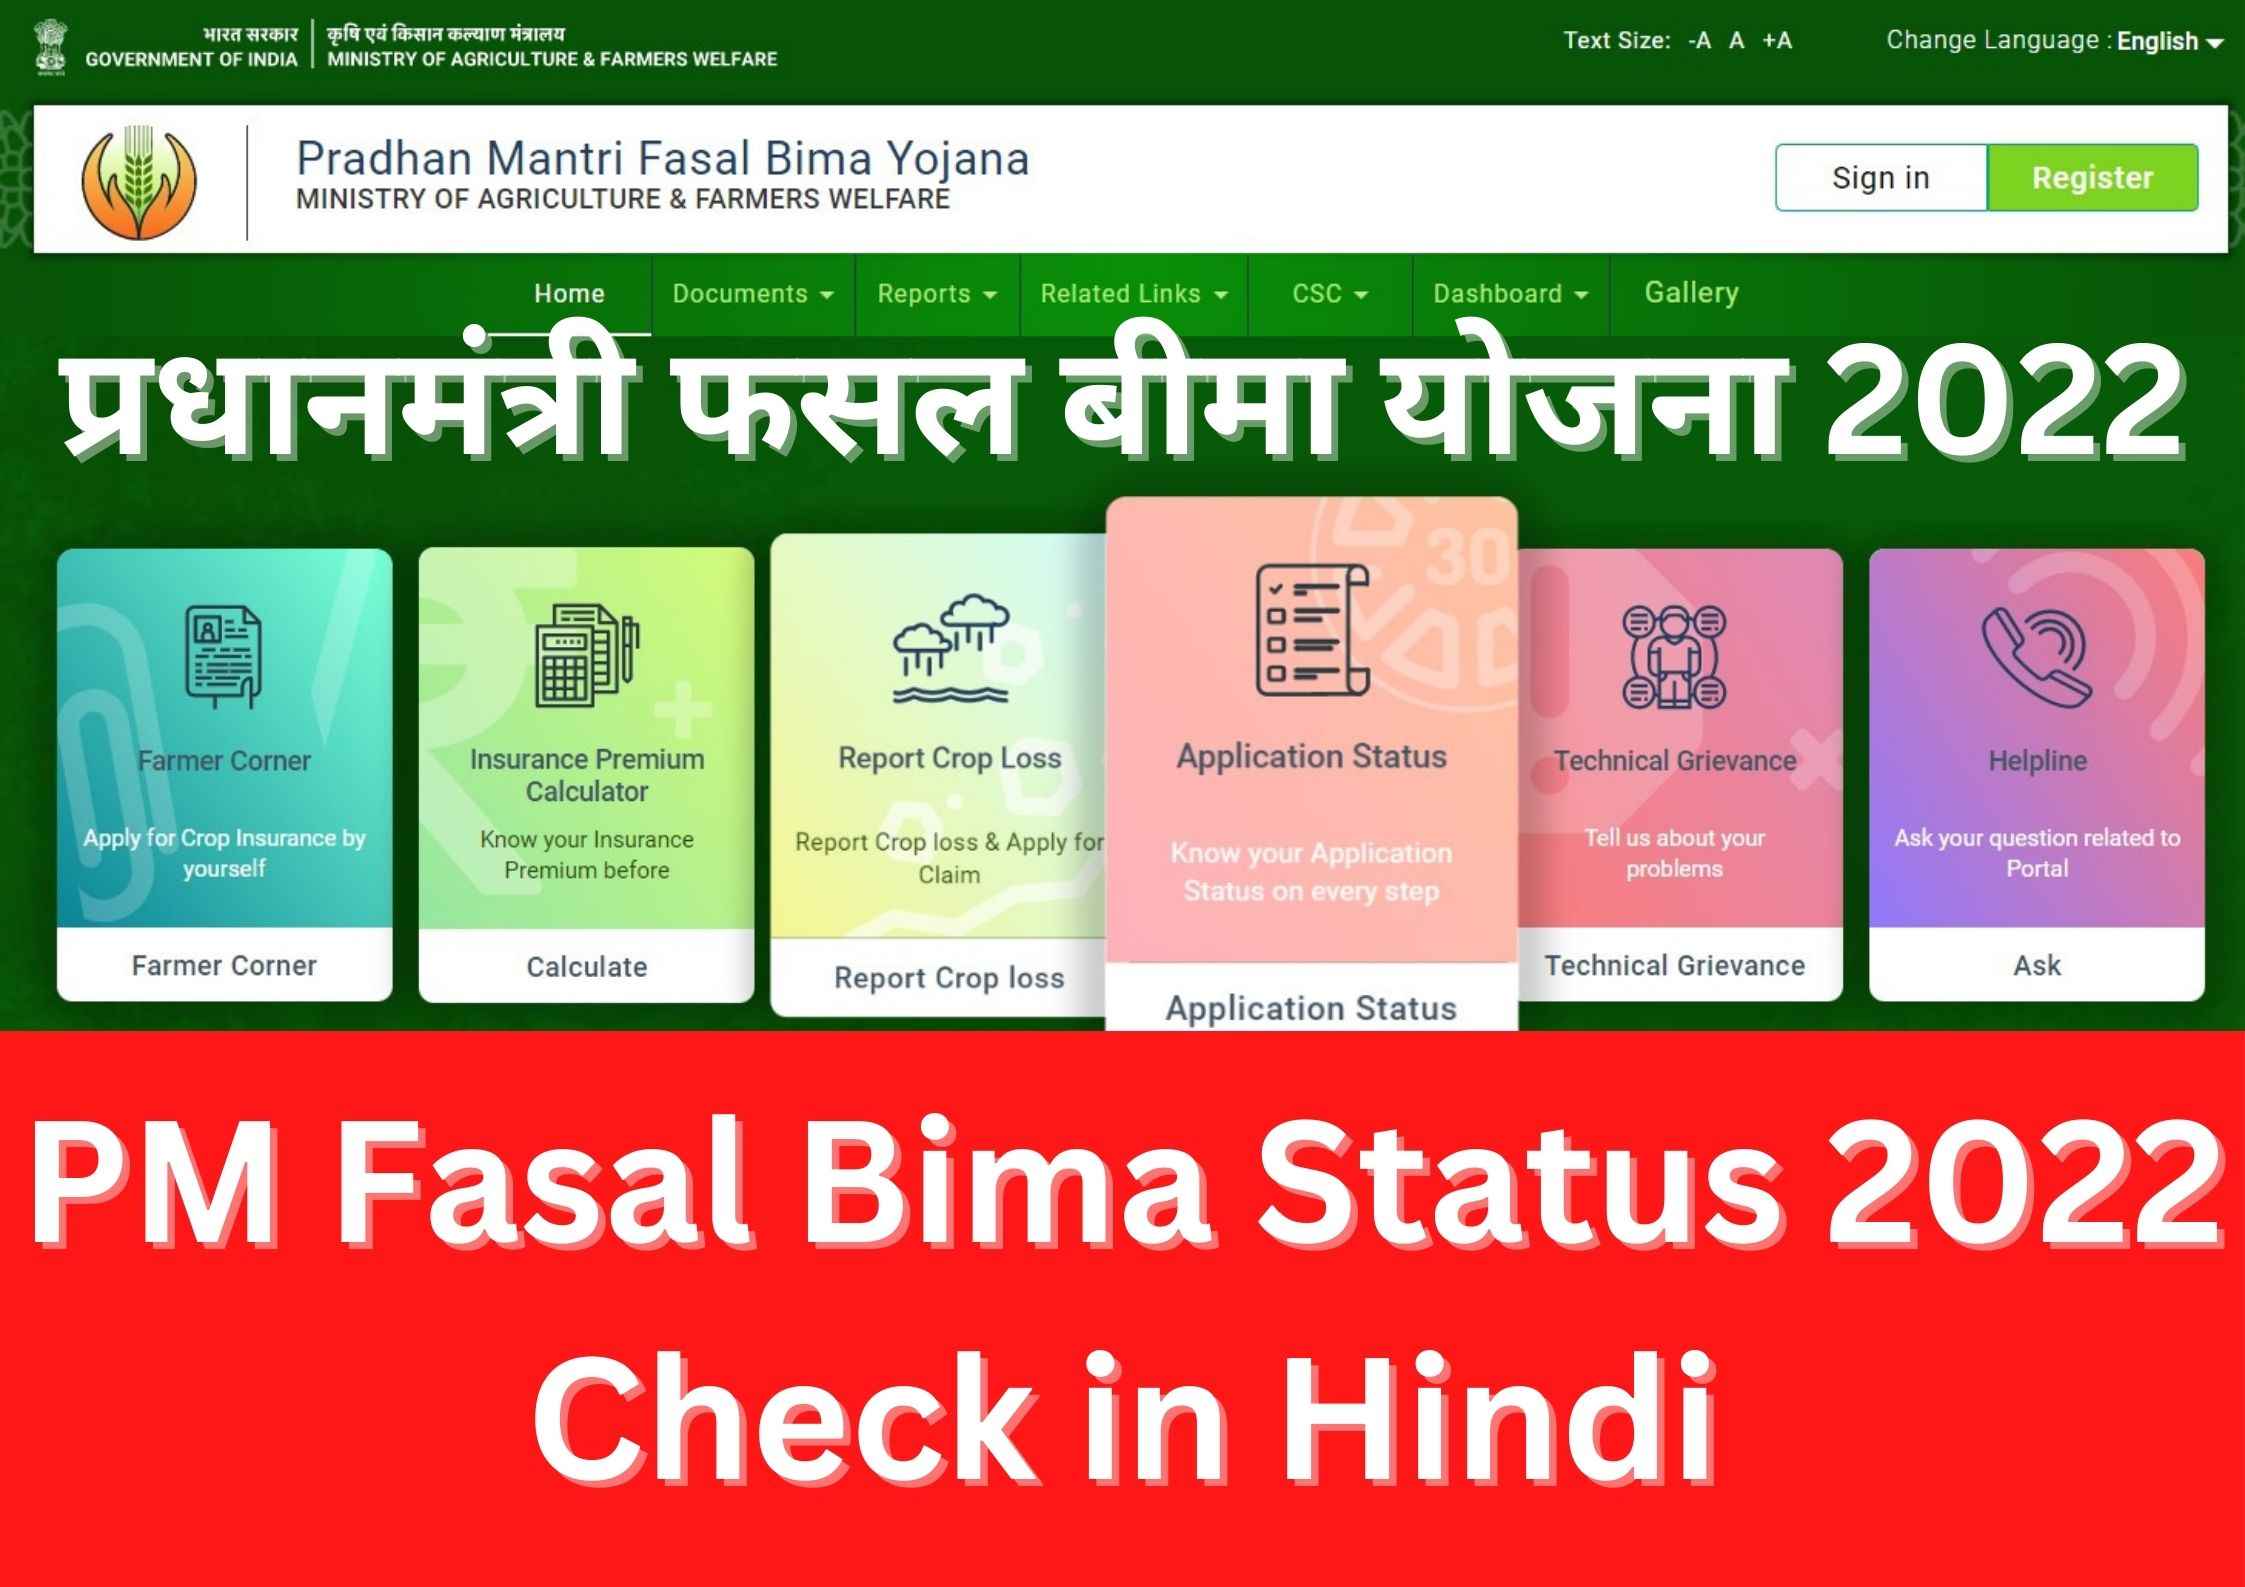 प्रधानमंत्री फसल बीमा योजना 2022 | PM Fasal Bima Status 2022 Check in Hindi